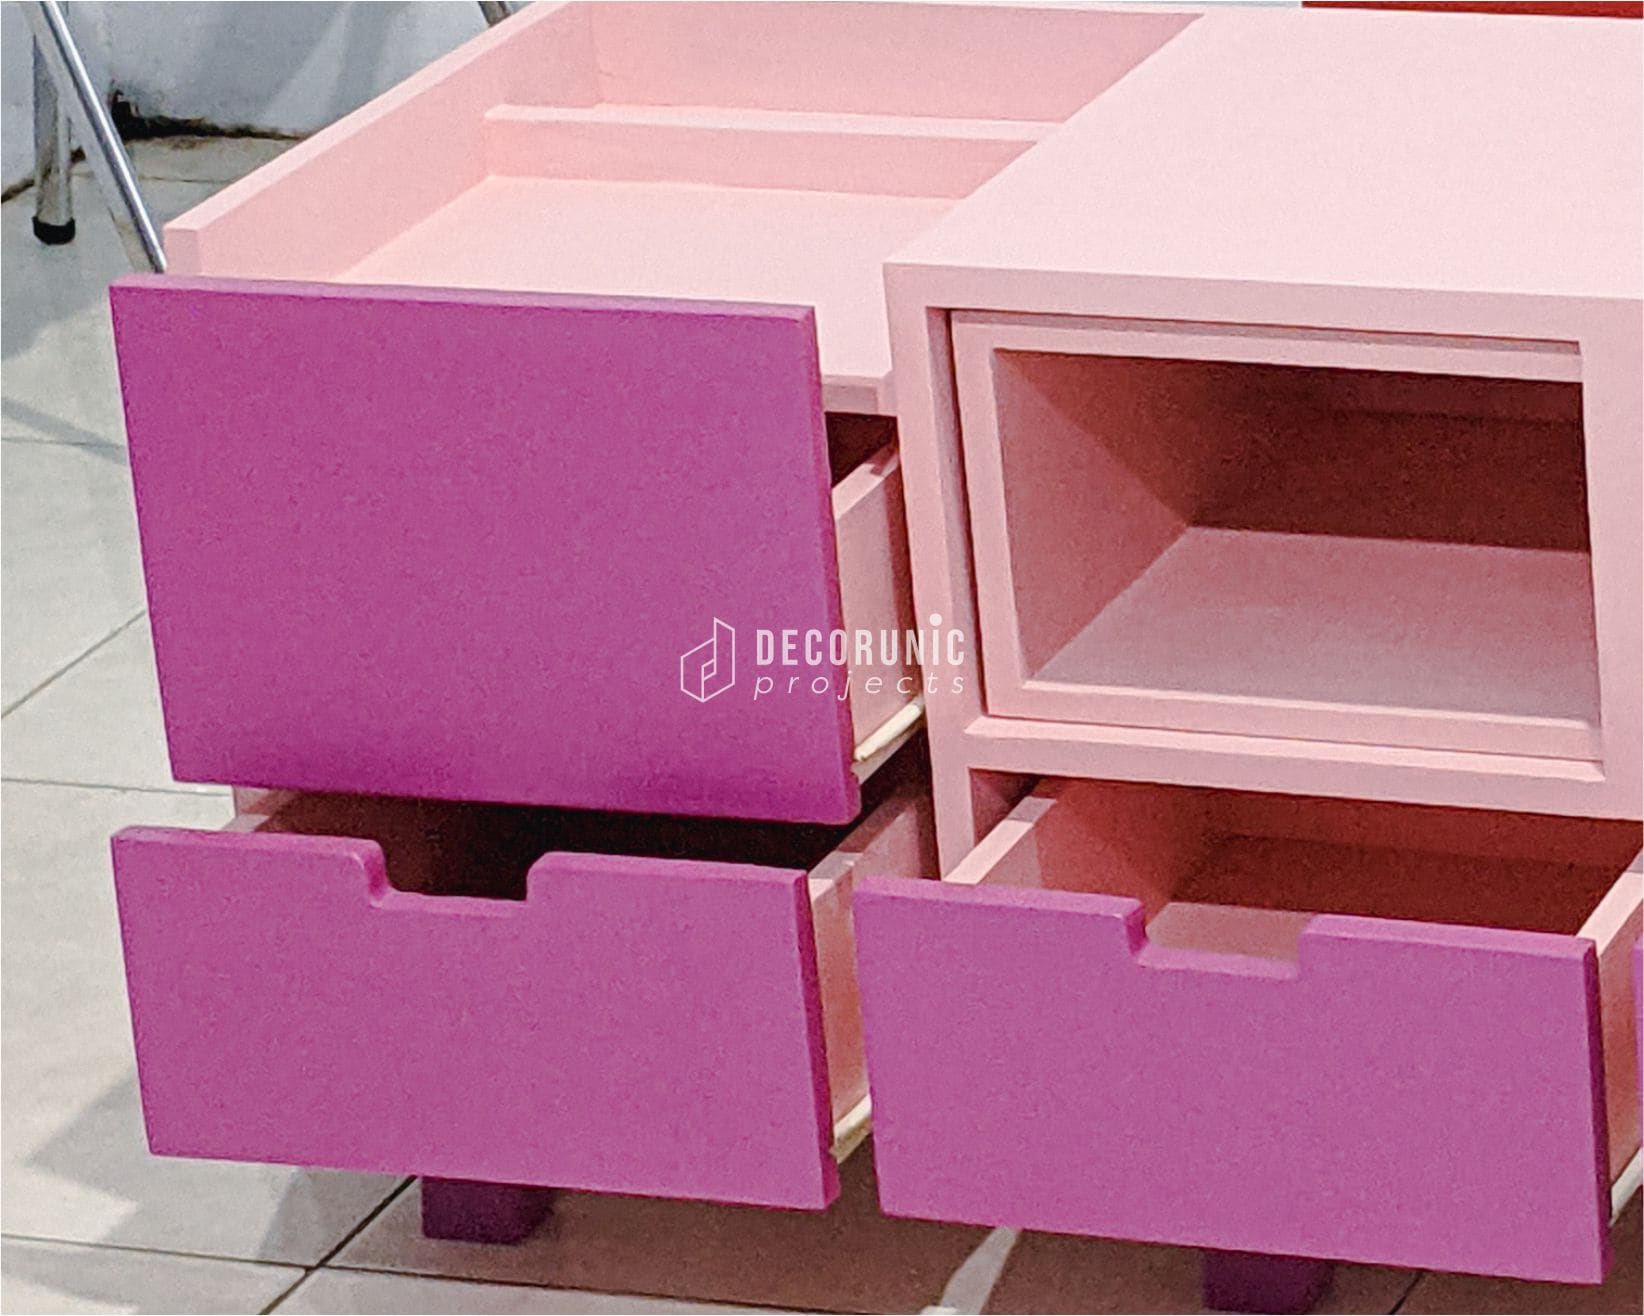 Meja TV hemat ruang warna pink dari kayu solid